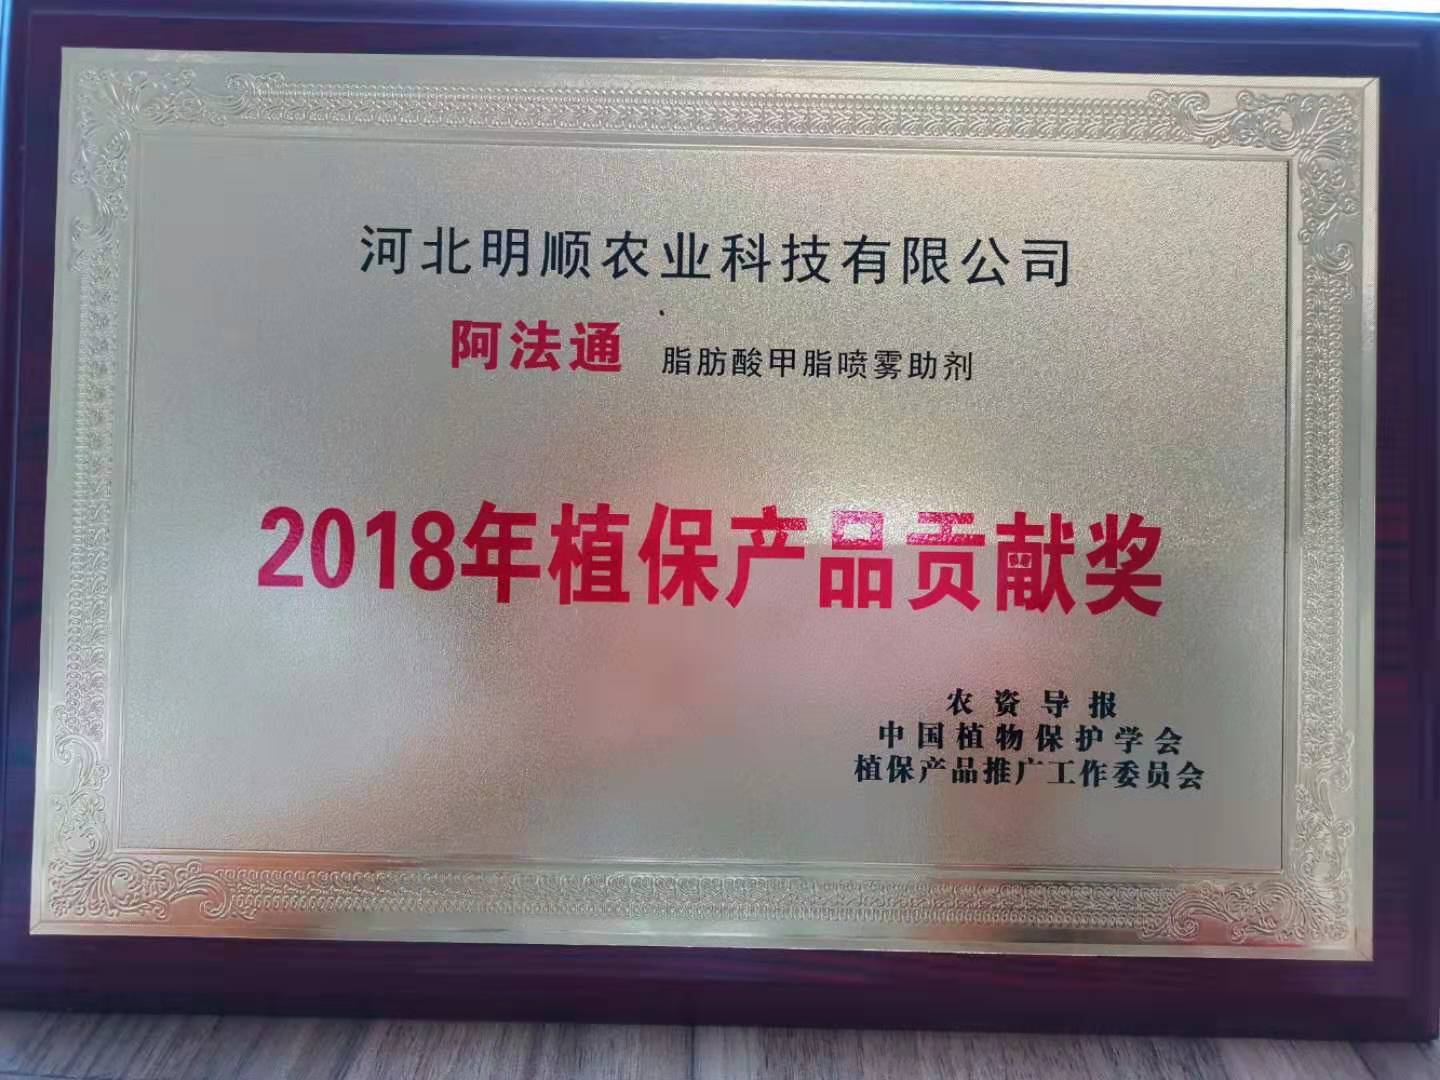 2018年植保产品贡献奖（阿法通））